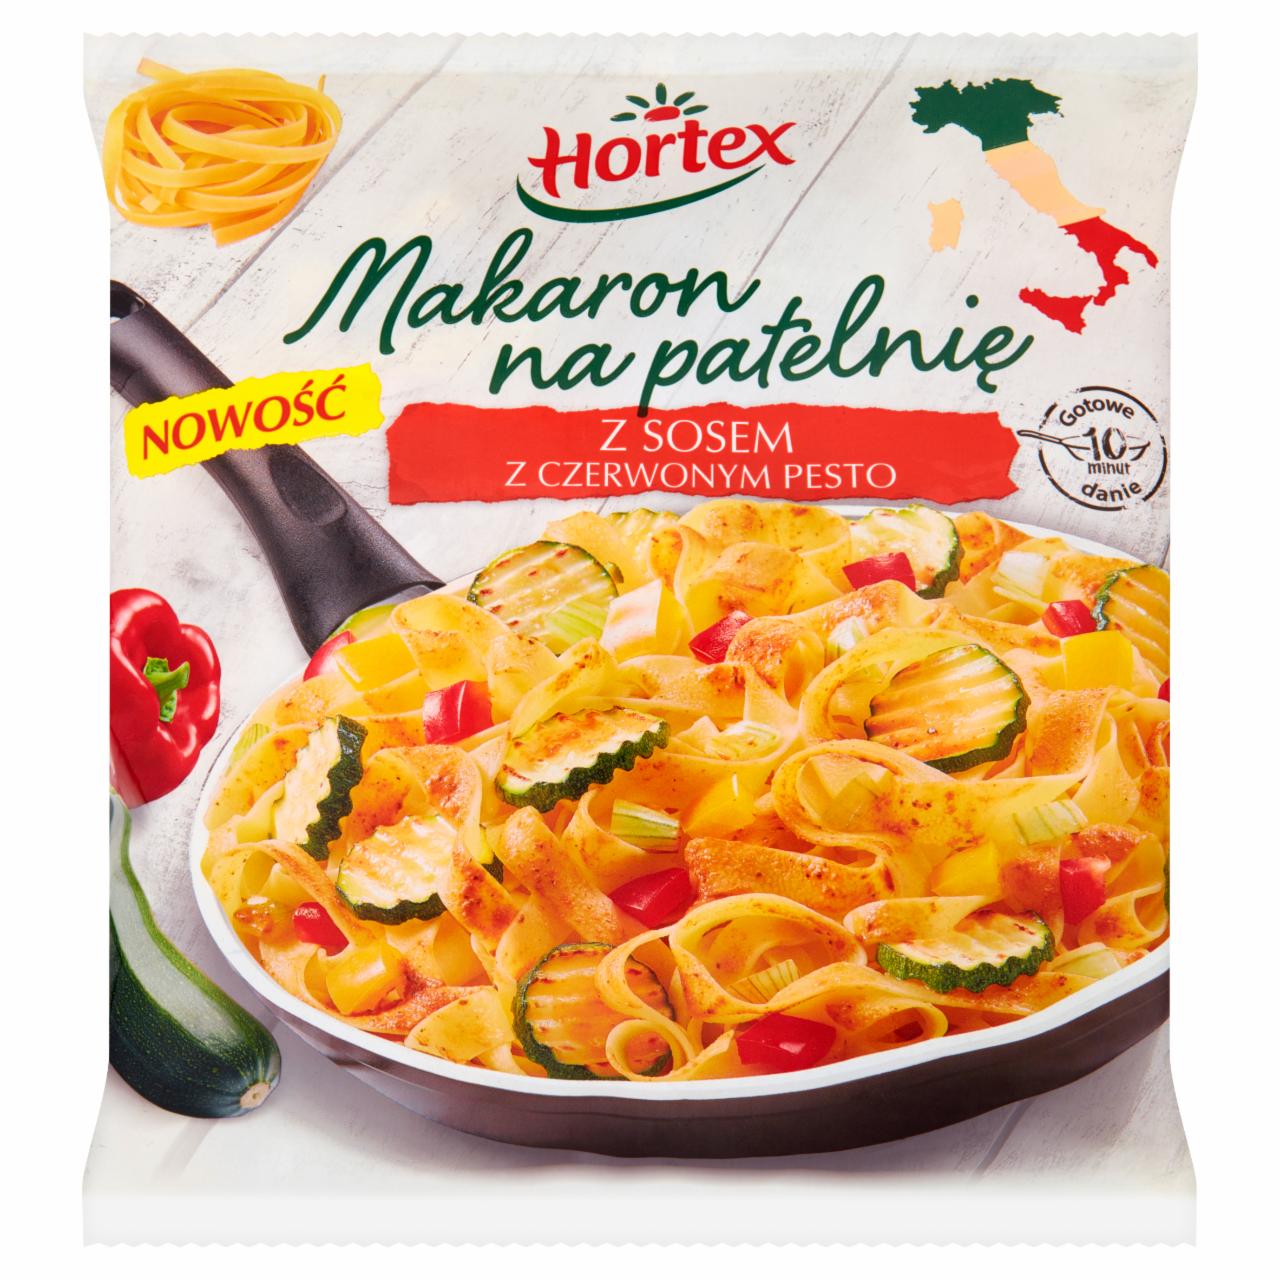 Zdjęcia - Hortex Makaron na patelnię z sosem z czerwonym pesto 450 g